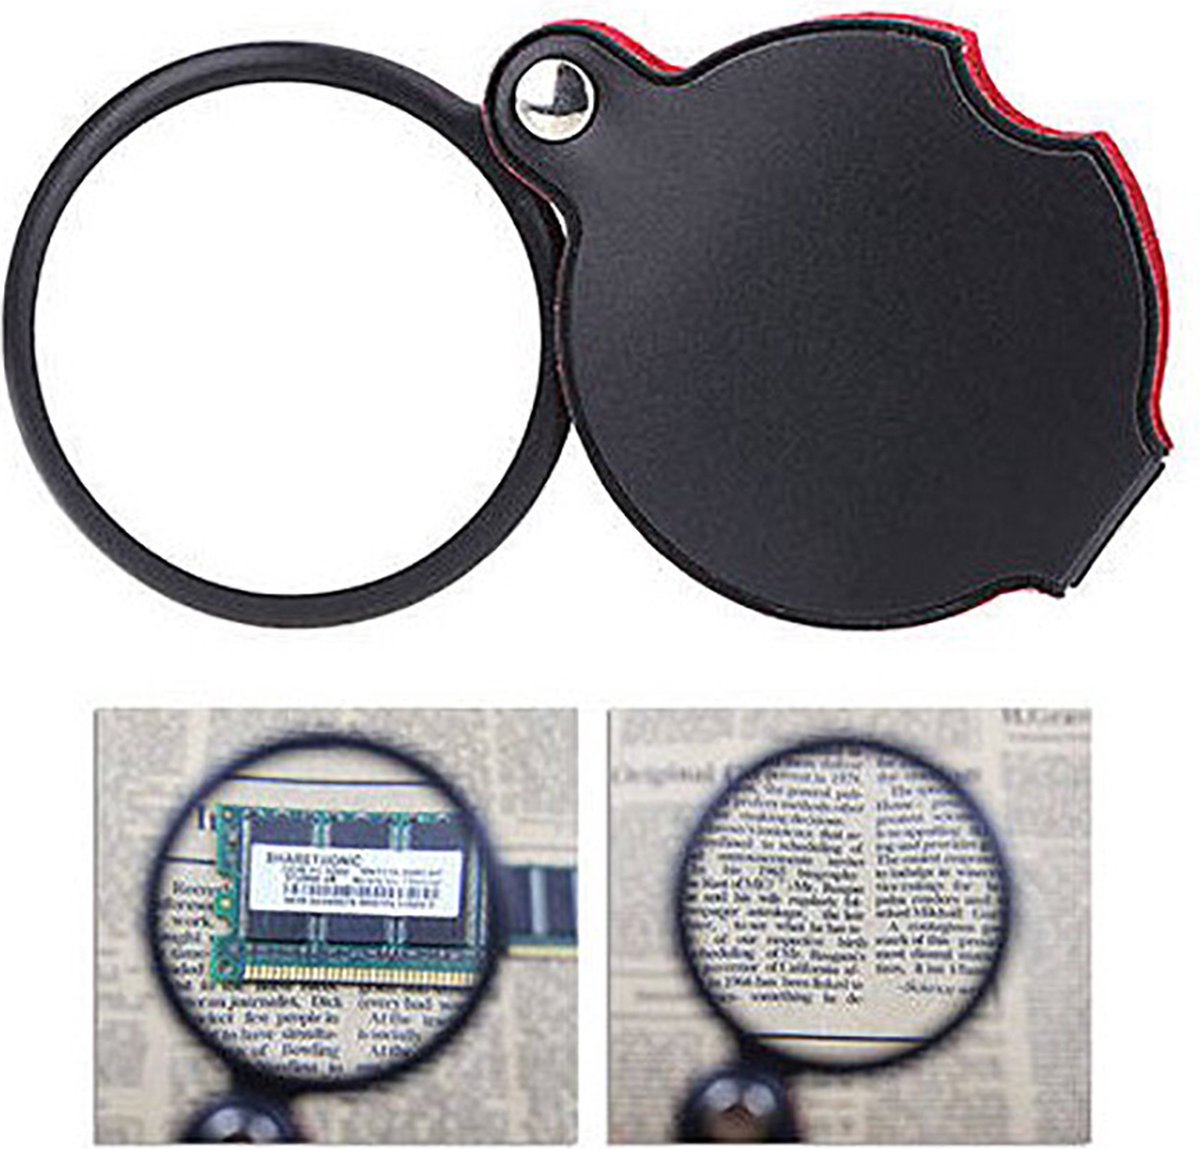 Leesloep - Pocket Handloep - Mini Vergrootglas - Zakloep 8x vergroting - Lens 50mm diameter - Merkloos